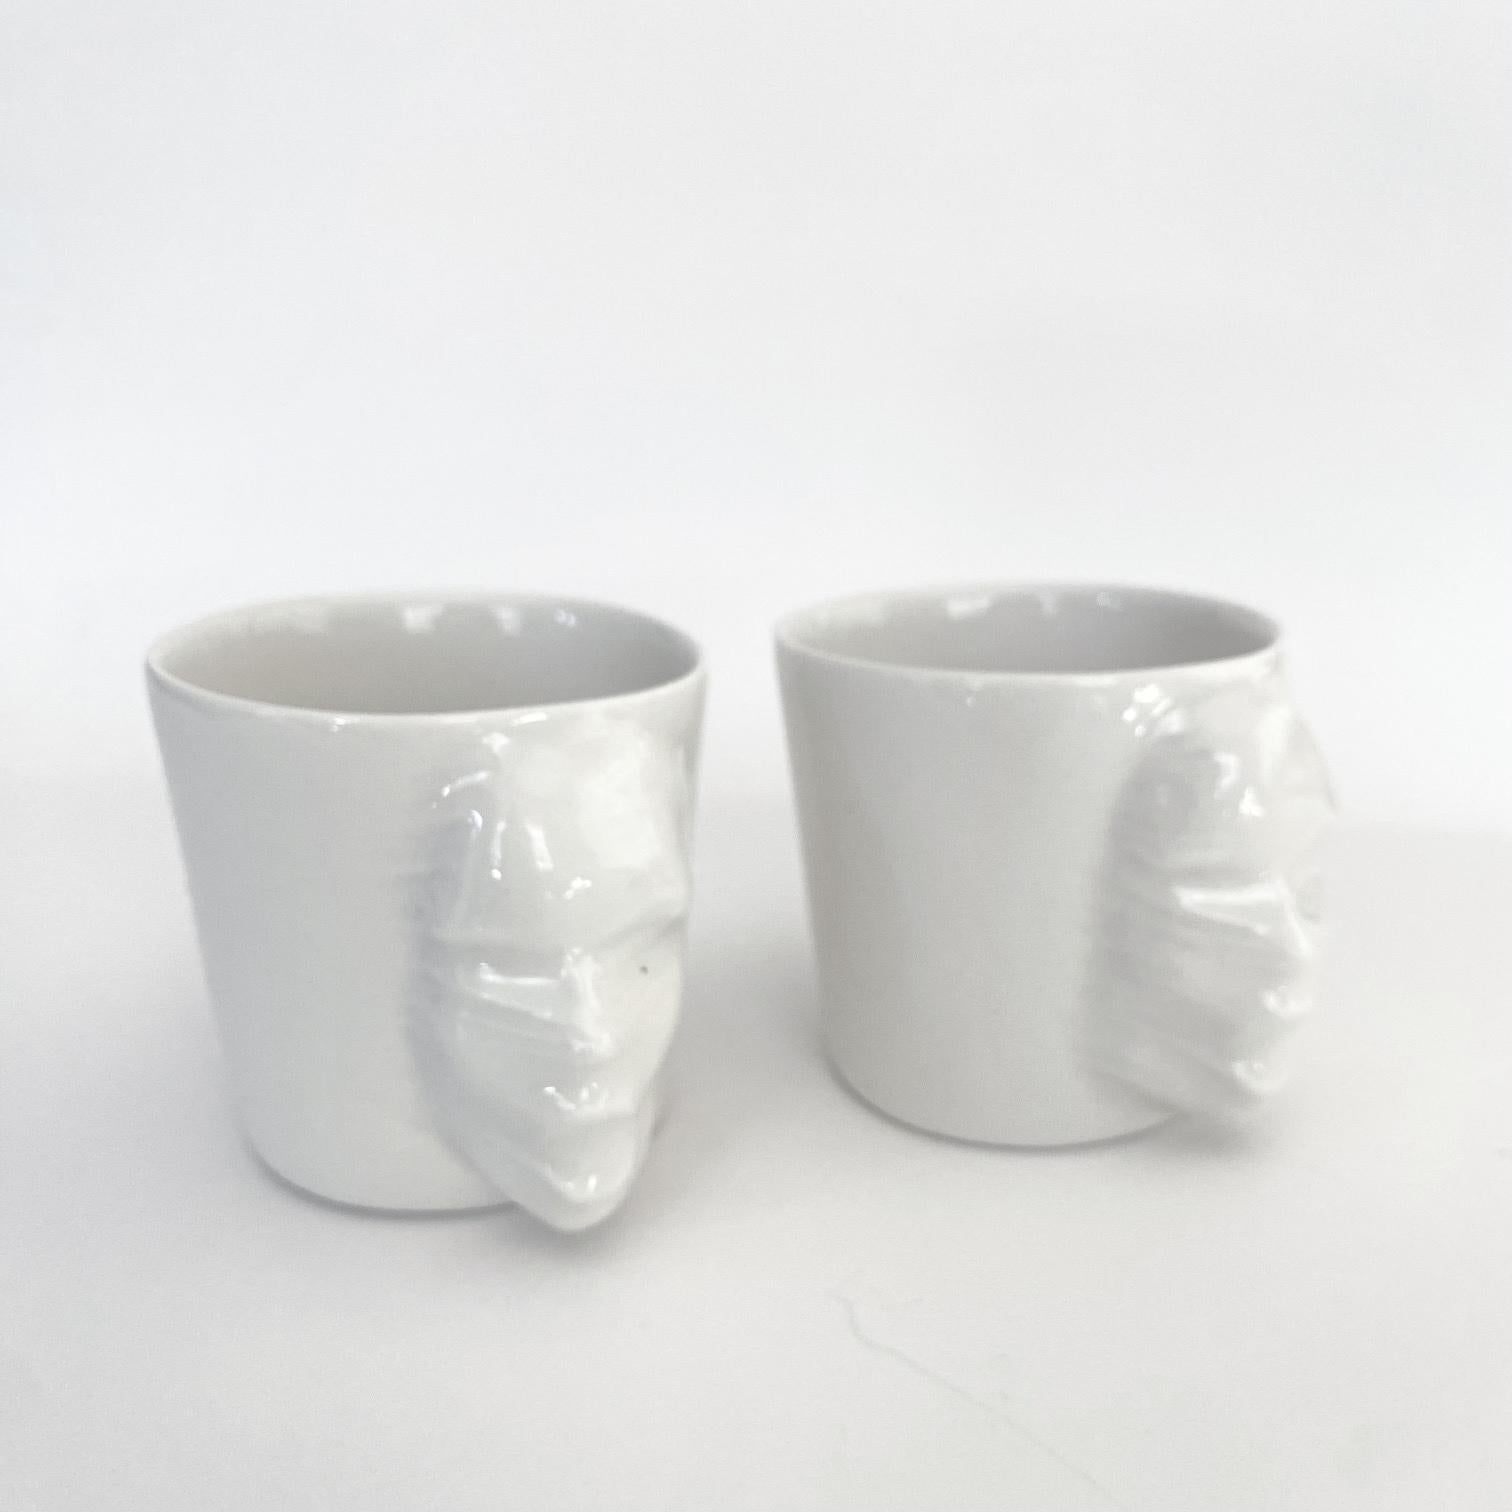 A set of 2 sculptural porcelain cups handmade by the ceramic artist Hulya Sozer. 
Food safe glaze.
Dishwasher safe.

Height: 6cm / Depth: 8cm / Diameter: 6cm
Volume: 100ml
Set includes 2 porcelain cups of 100ml

Hulya Sozer is a ceramic artist,